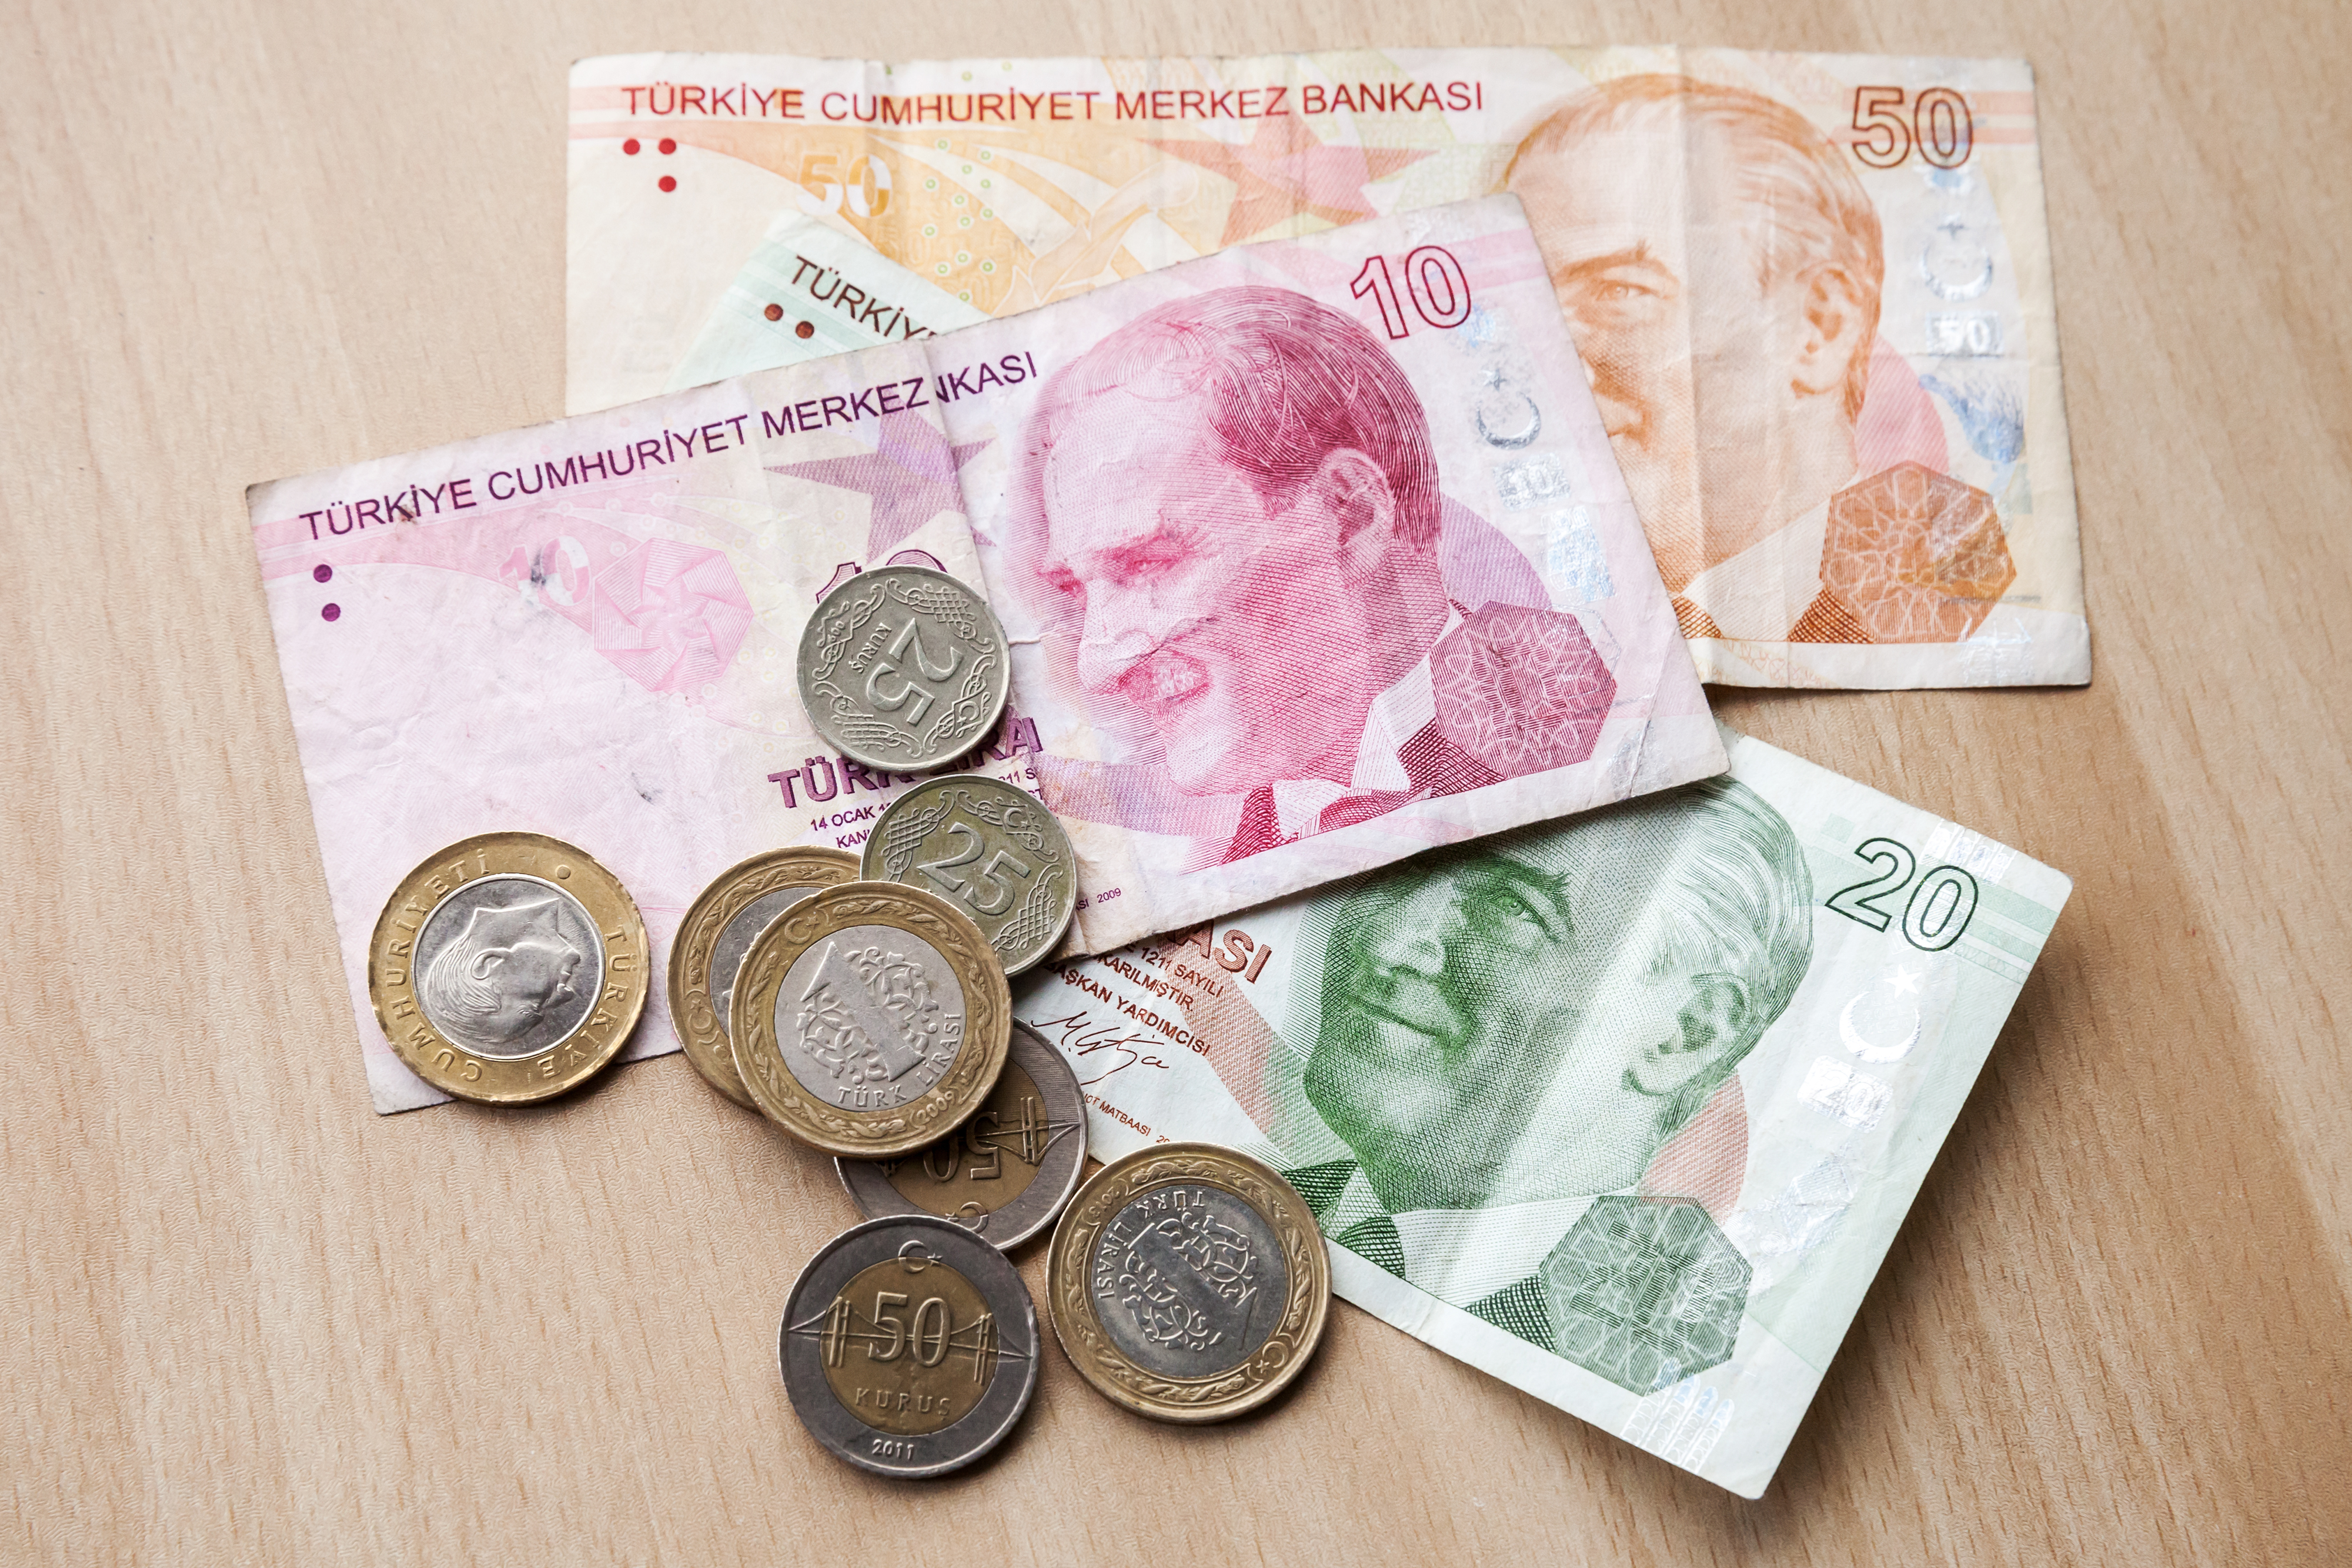 Обмен валюты в турции рубли на лиры monero wallet check balance